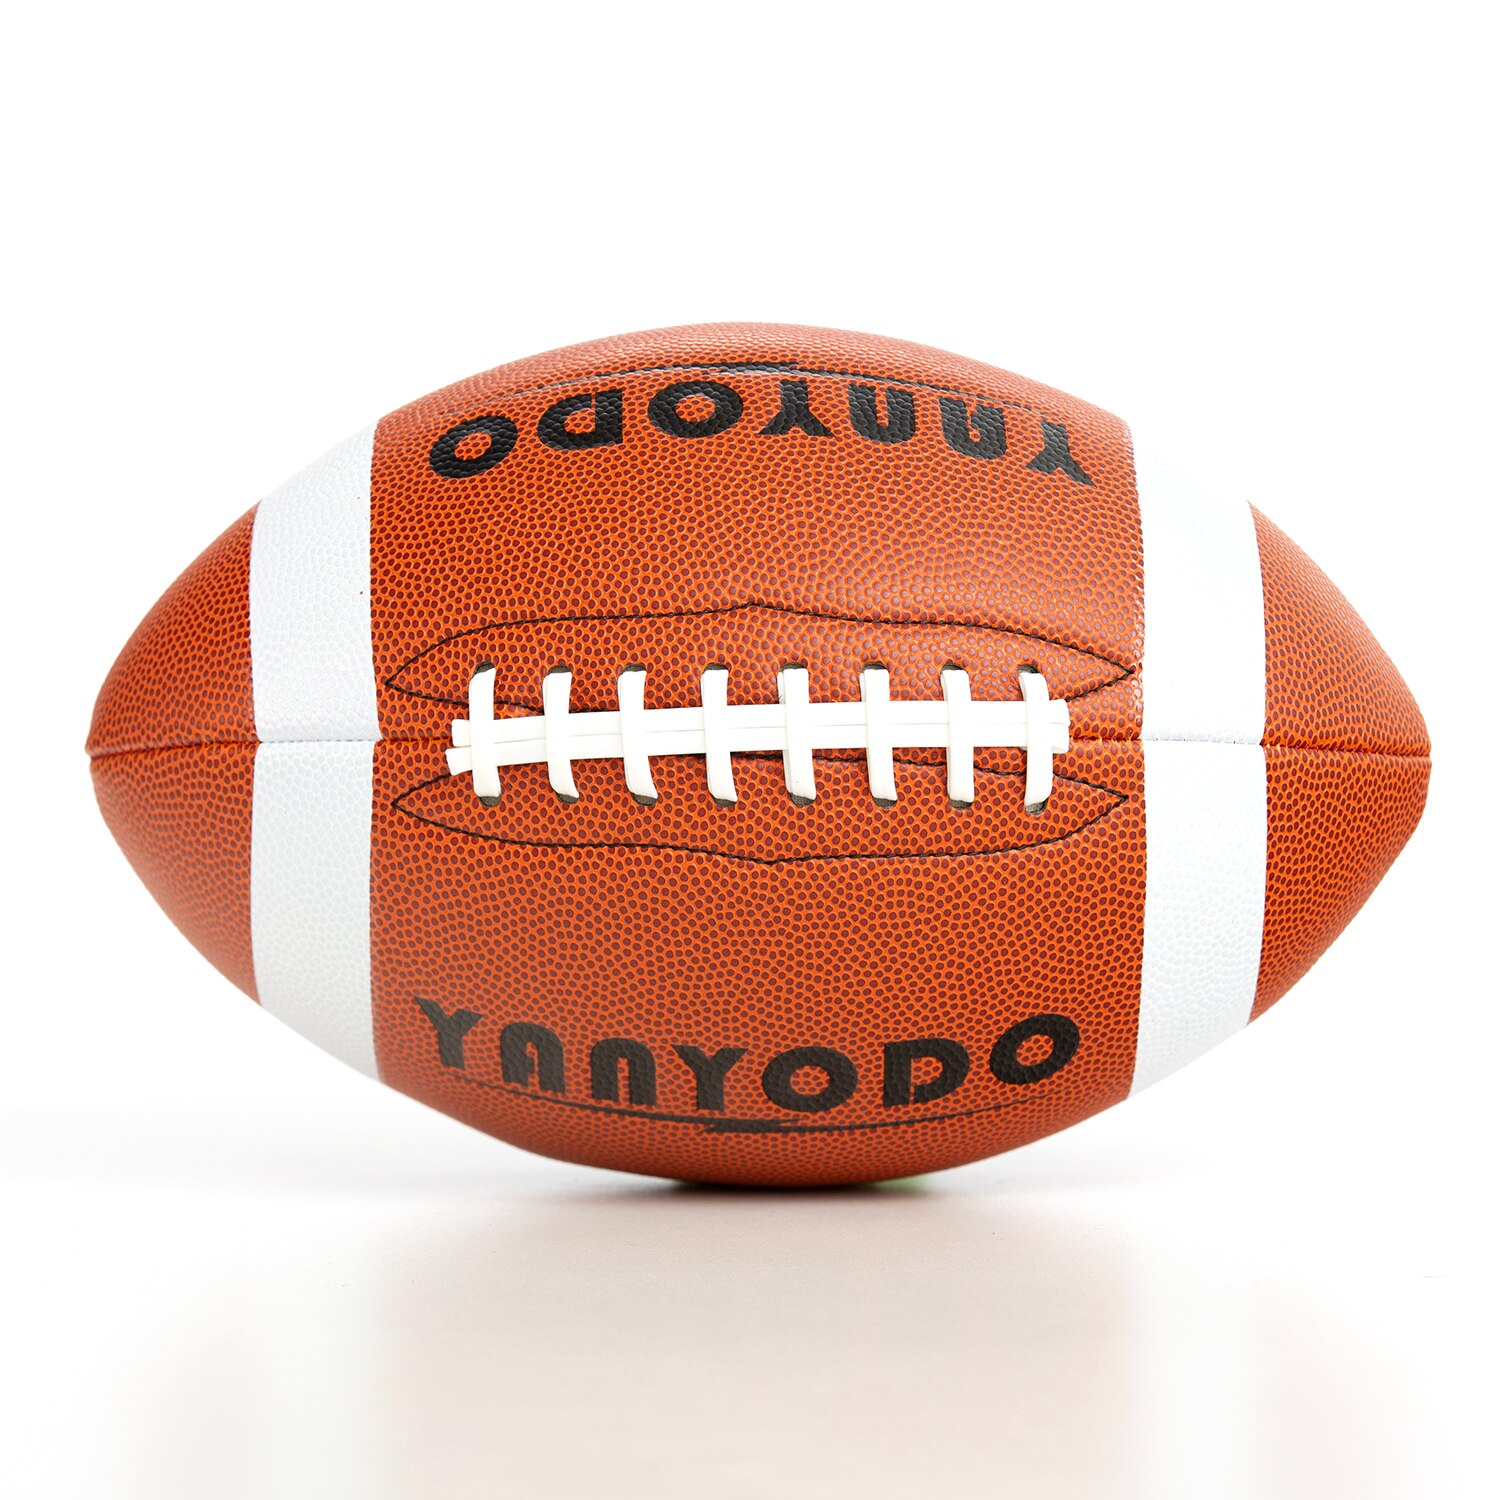 American Football Maat 9 Super Grip Composiet Voetbal Training & Recreatie Spelen American Football Bal Voor Jeugd